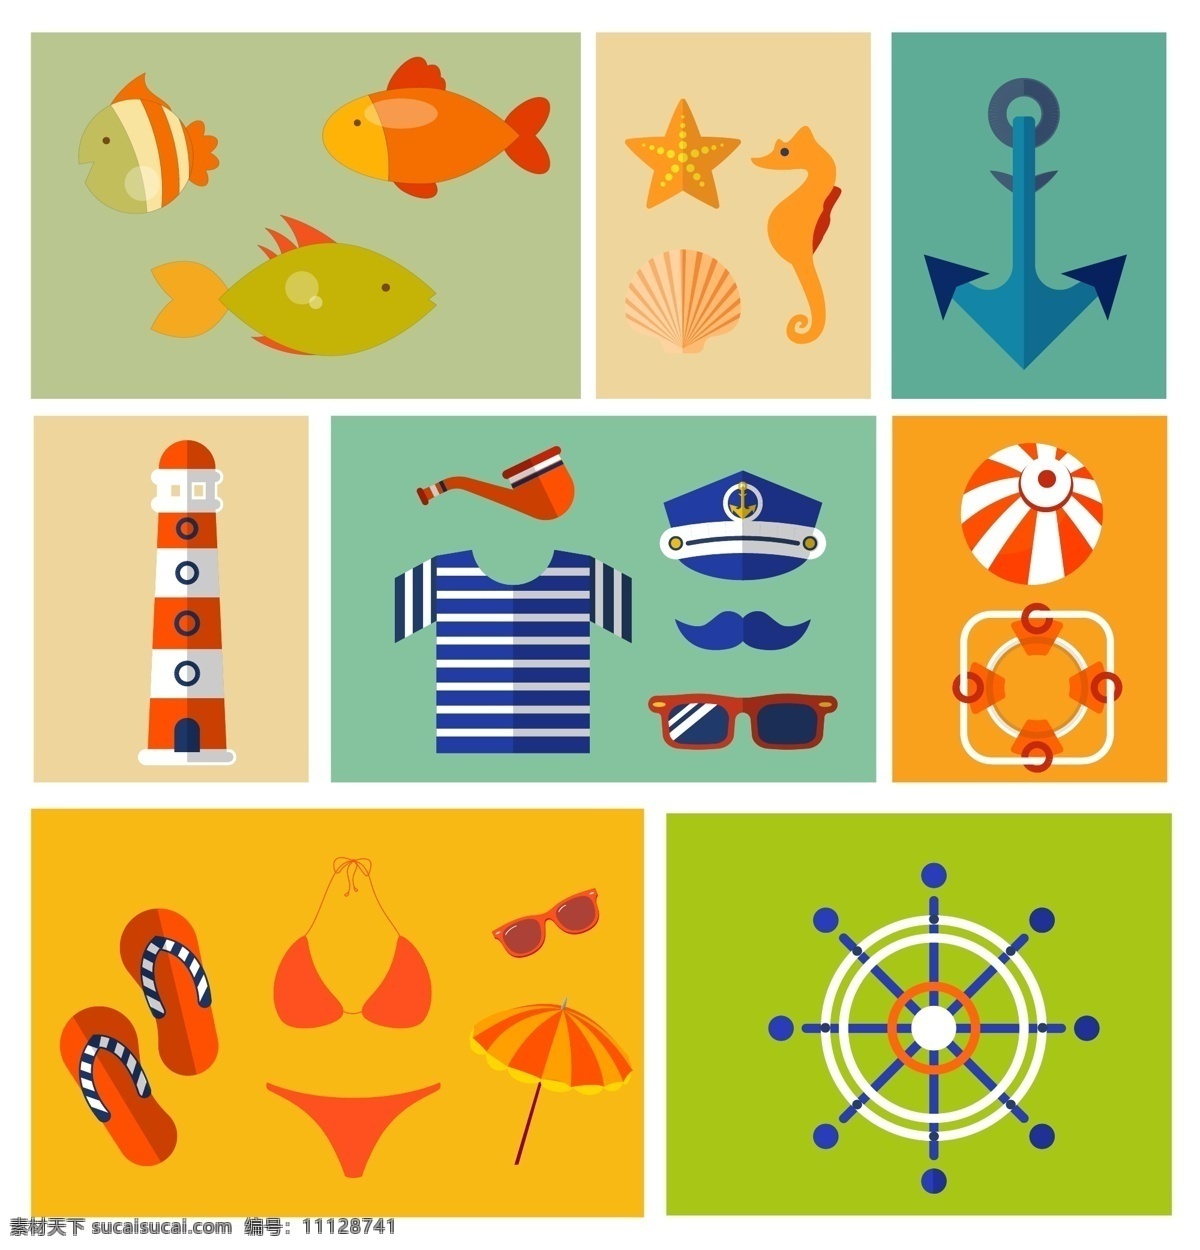 度假 海边 图标 集合 度假图标 旅游 矢量素材 鱼 海马 泳衣